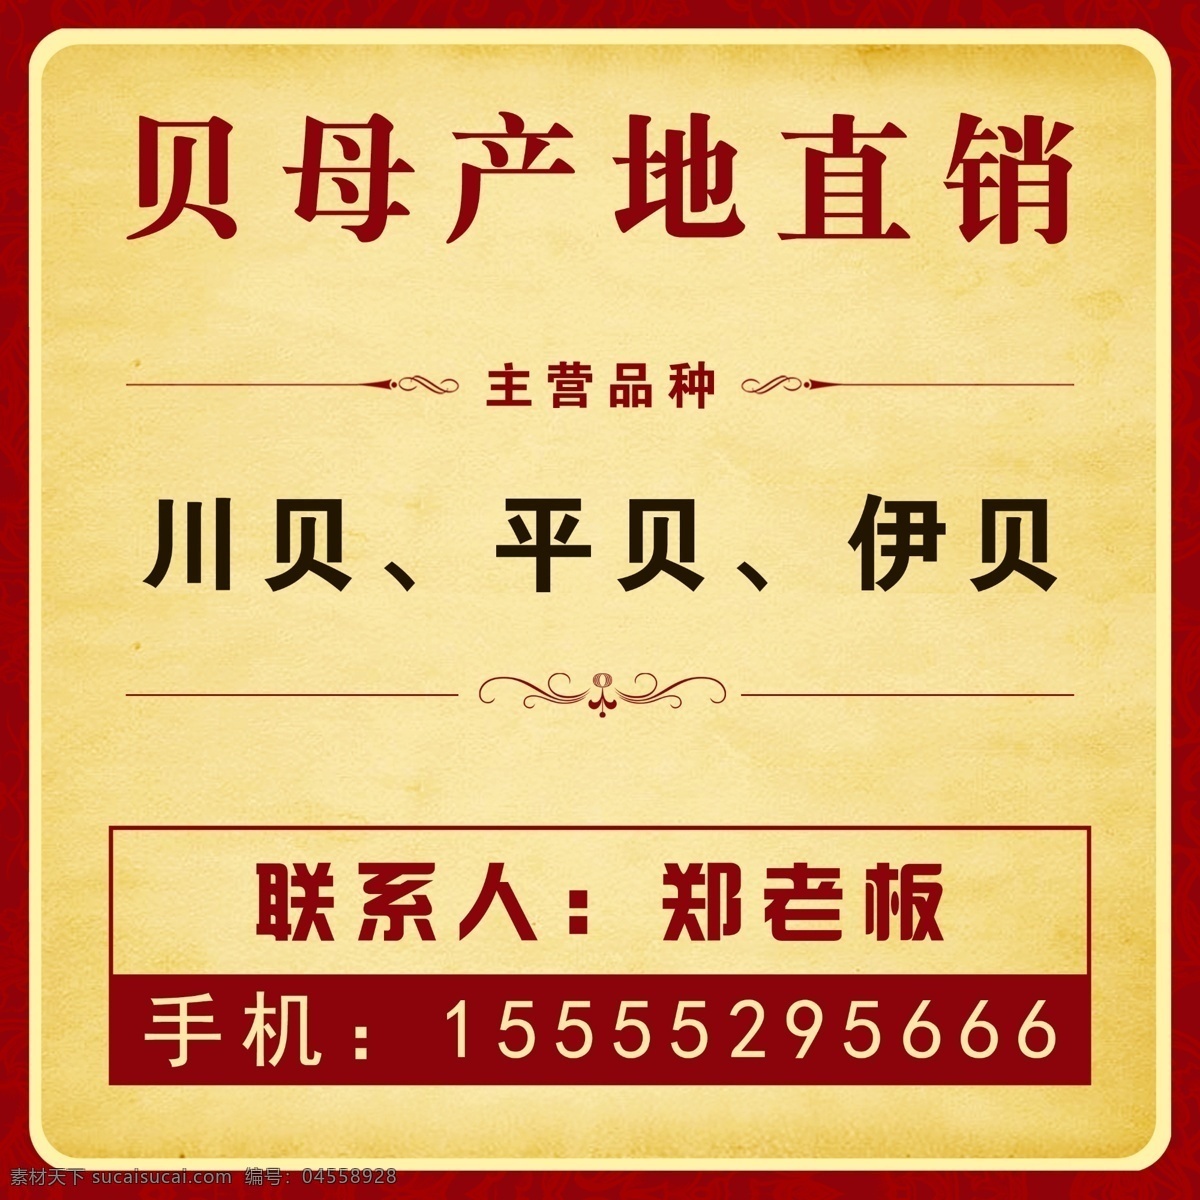 贝母产地直销 中药材 写真 喷绘 古典 传统 中国风背景 专营商 广告牌 ad 营销 销售 中国风 中国元素 黄色